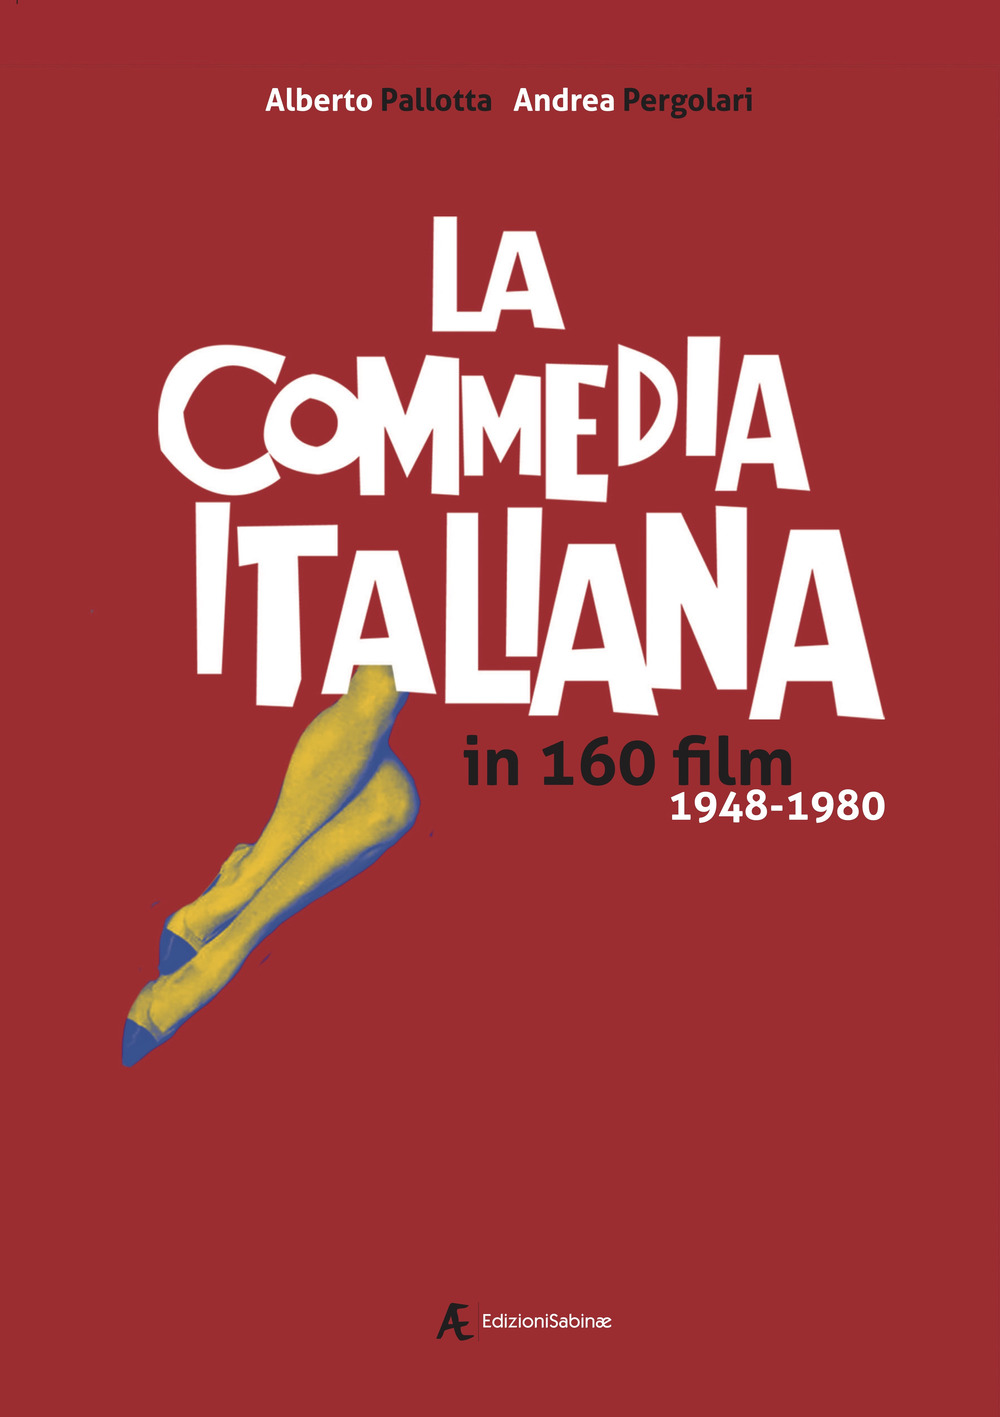 Libri Alberto Pallotta / Andrea Pergolari - La Commedia Italiana In 160 Film. 1948-1980 NUOVO SIGILLATO, EDIZIONE DEL 28/04/2022 SUBITO DISPONIBILE